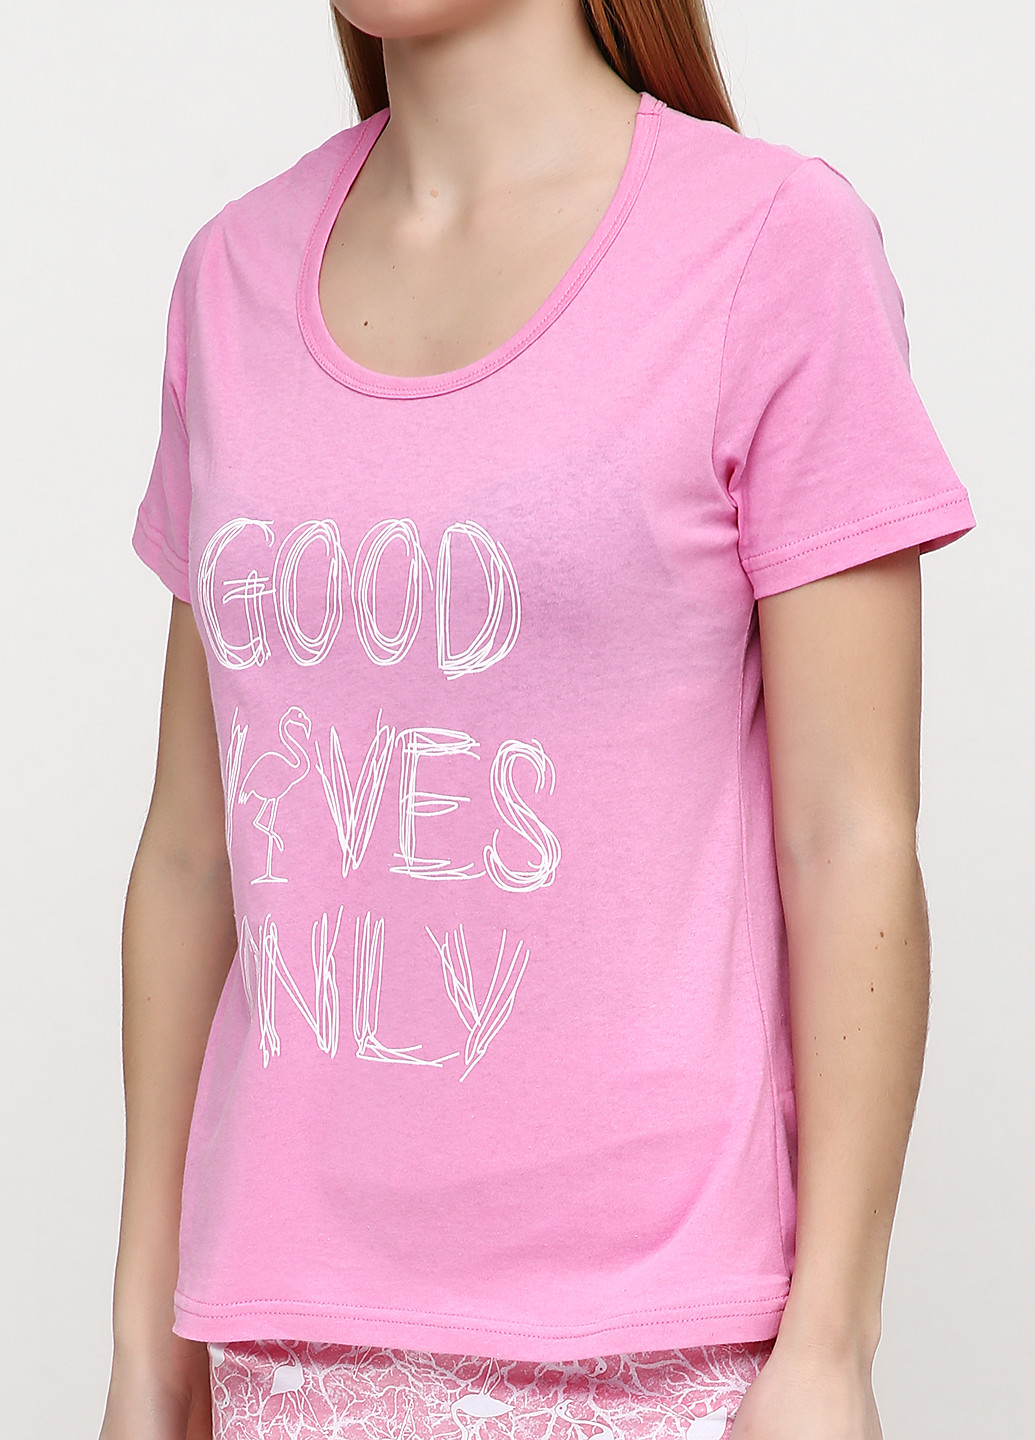 Розово-лиловый демисезонный комплект (футболка, капри) Фабрика наш одяг